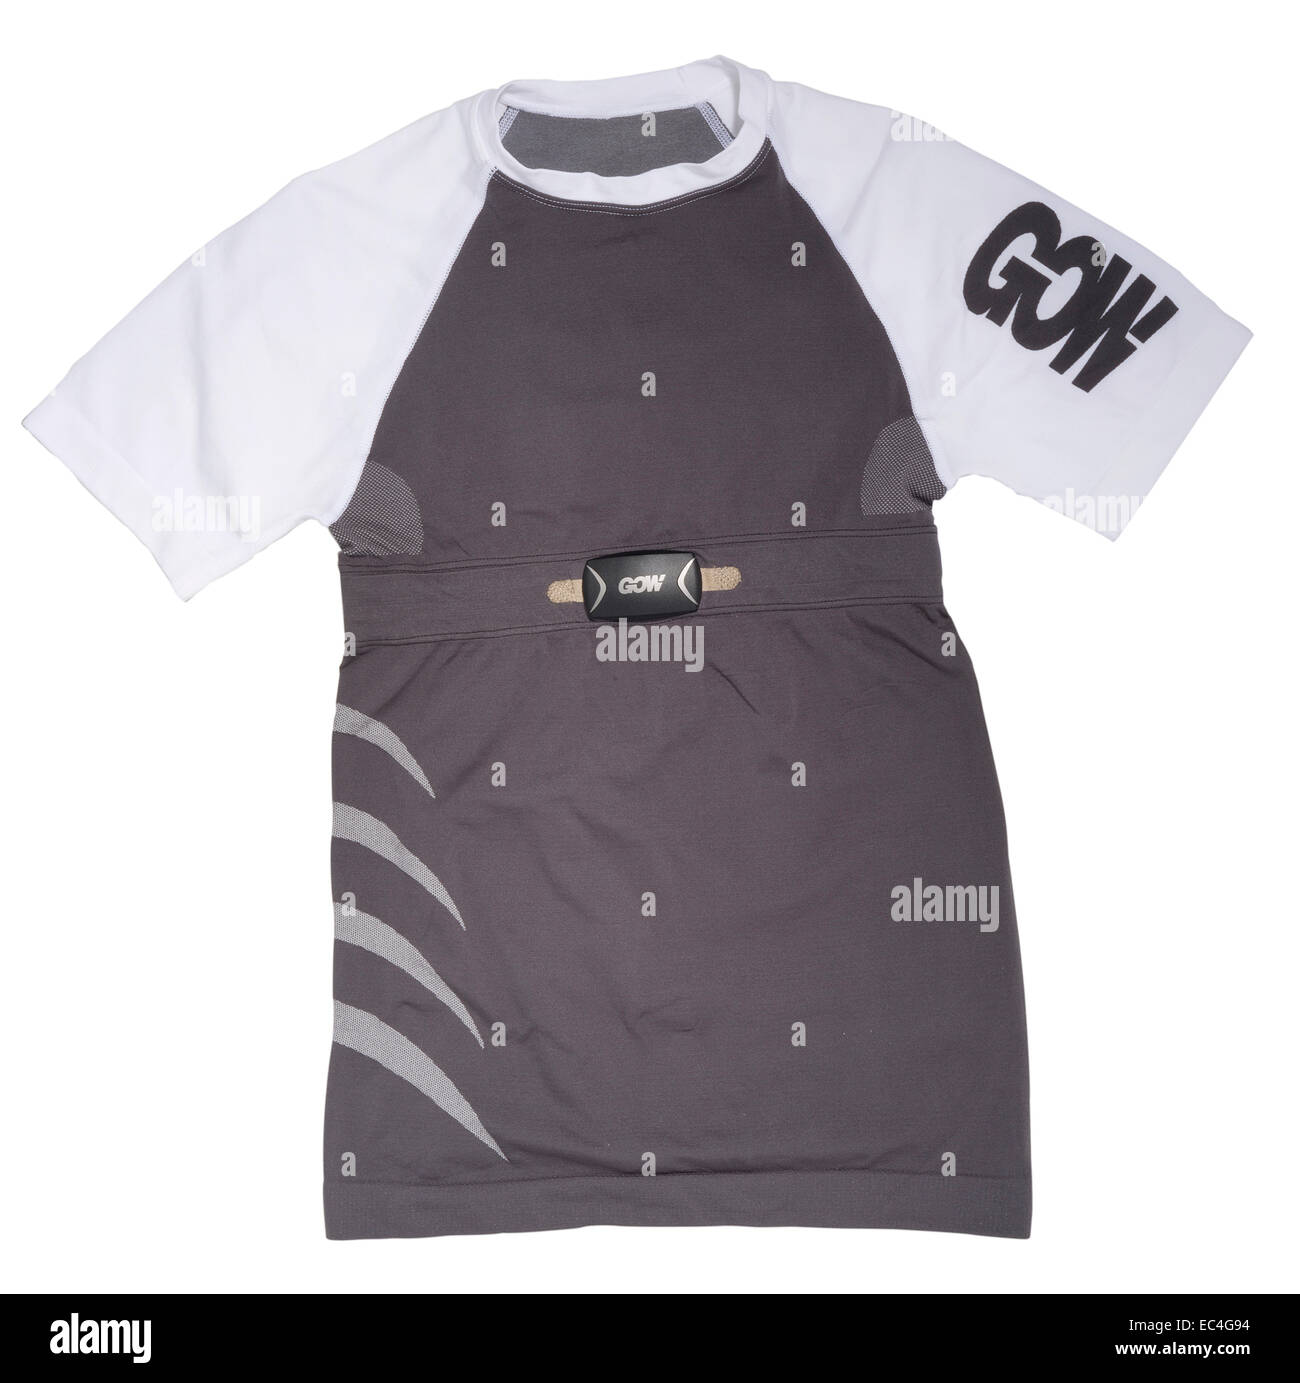 GOW Smart Stoff T-Shirt für Männer mit integrierten kardiale Bluetooth-Sensor. Stockfoto